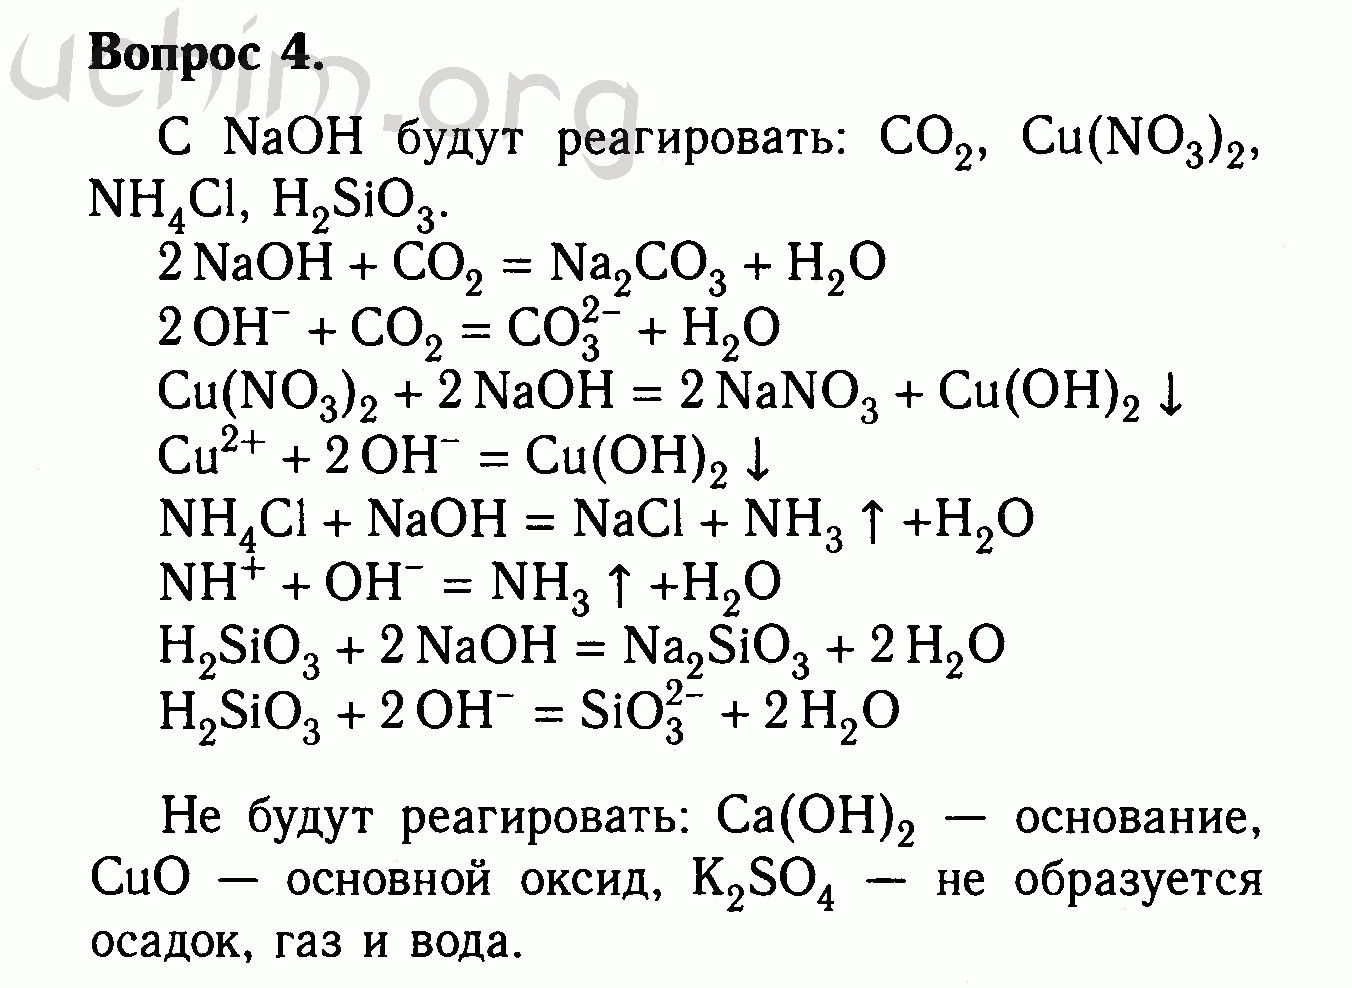 Нитрат натрия реагирует с гидроксидом кальция. Оксид меди + со4 Купрума. Оксид меди 2 плюс гидроксид натрия. С гидроксидом натрия реагирует оксид меди 2. Магний плюс фосфат меди 2.